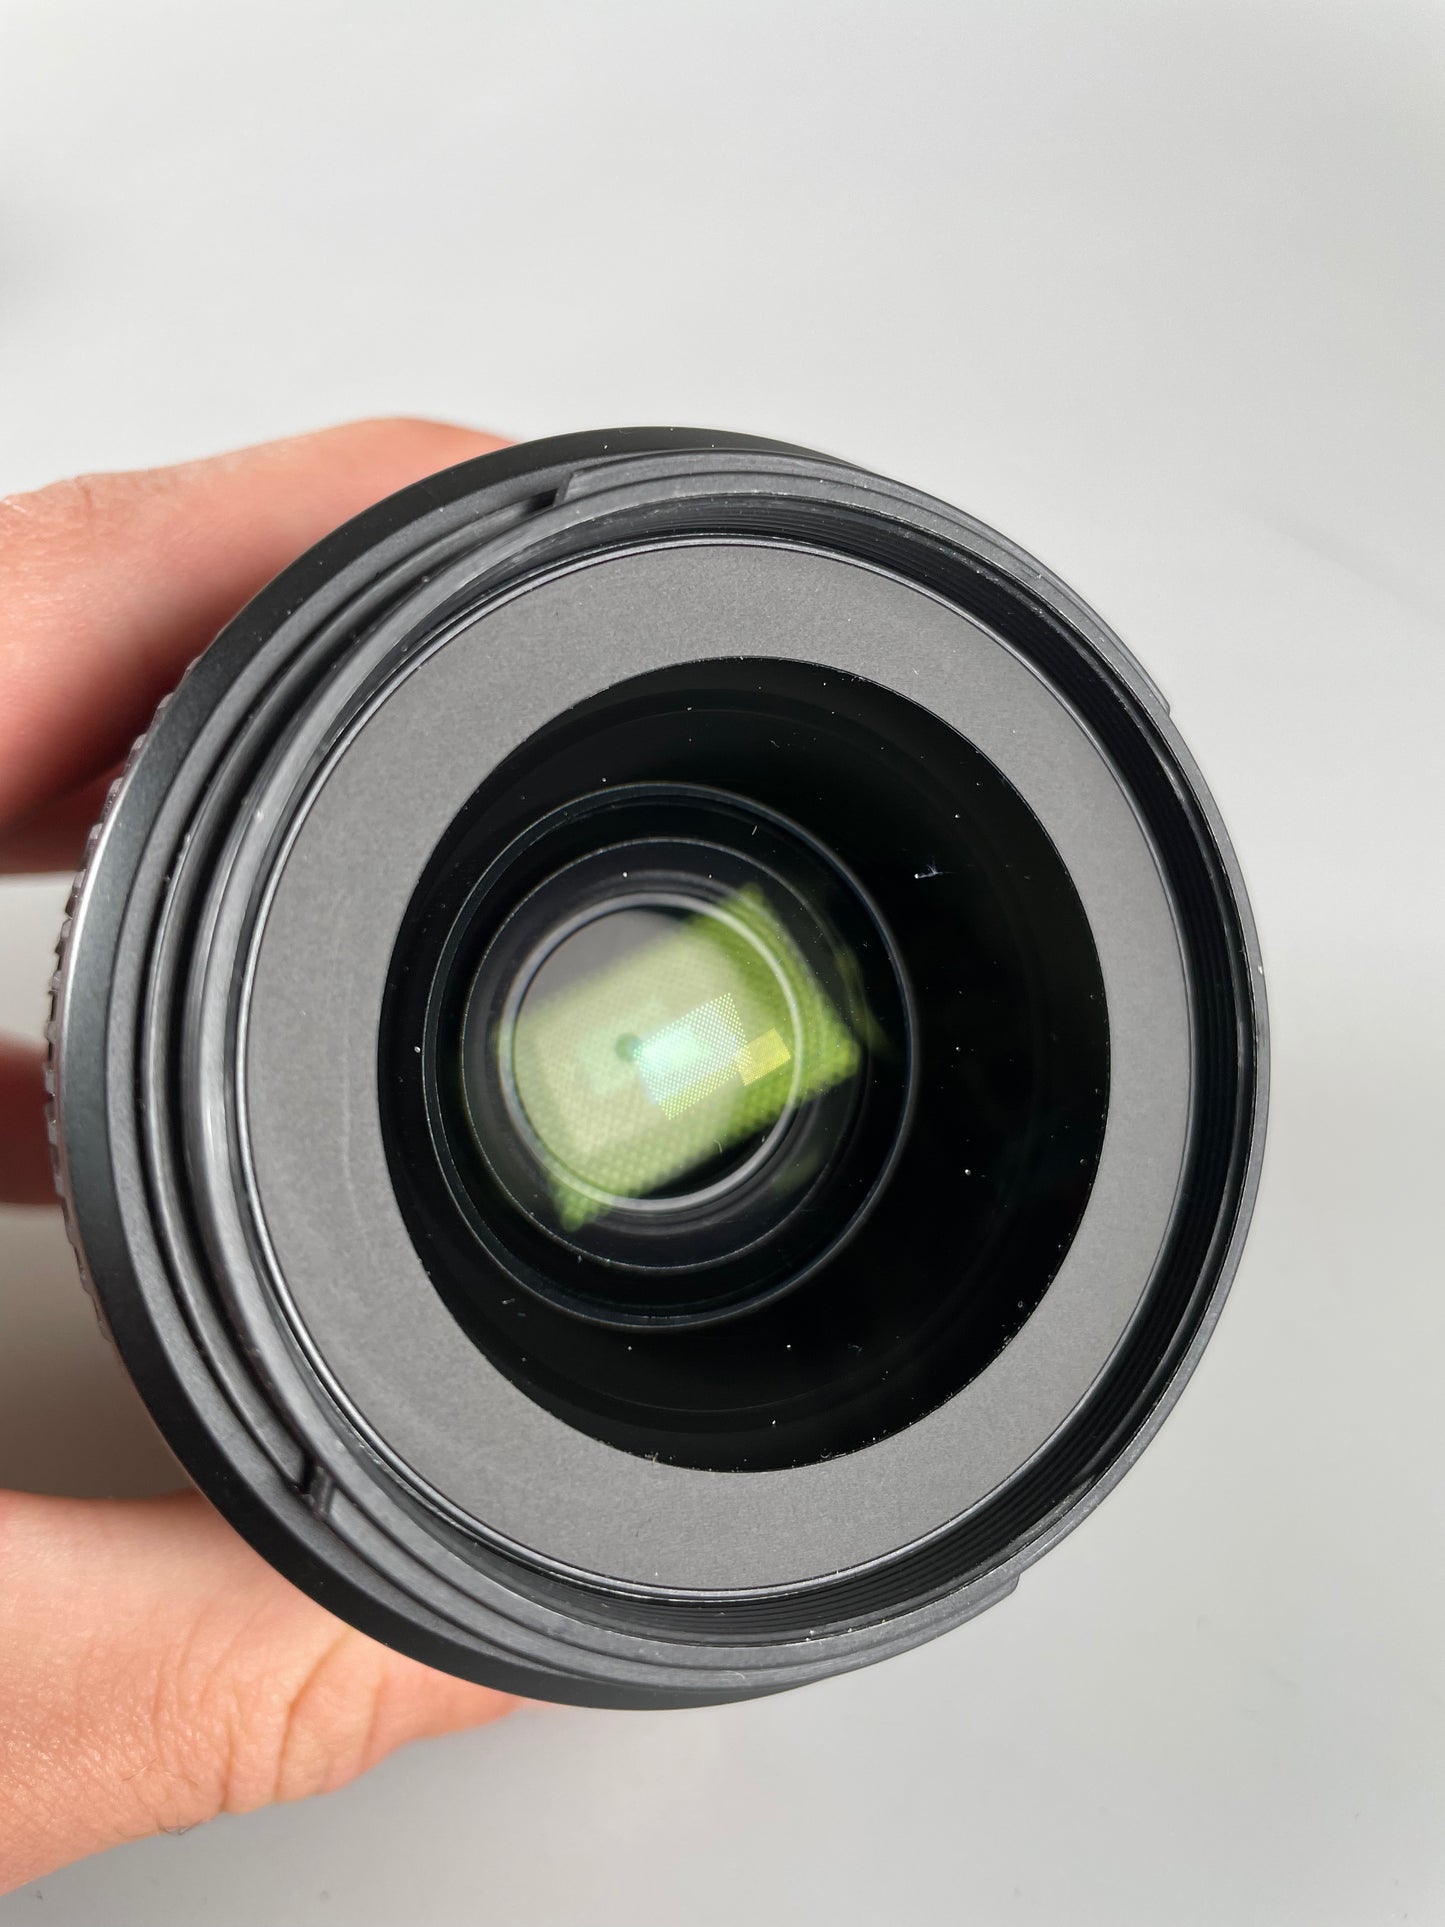 Nikon FX 35mm f/1.8 G digital camera lens